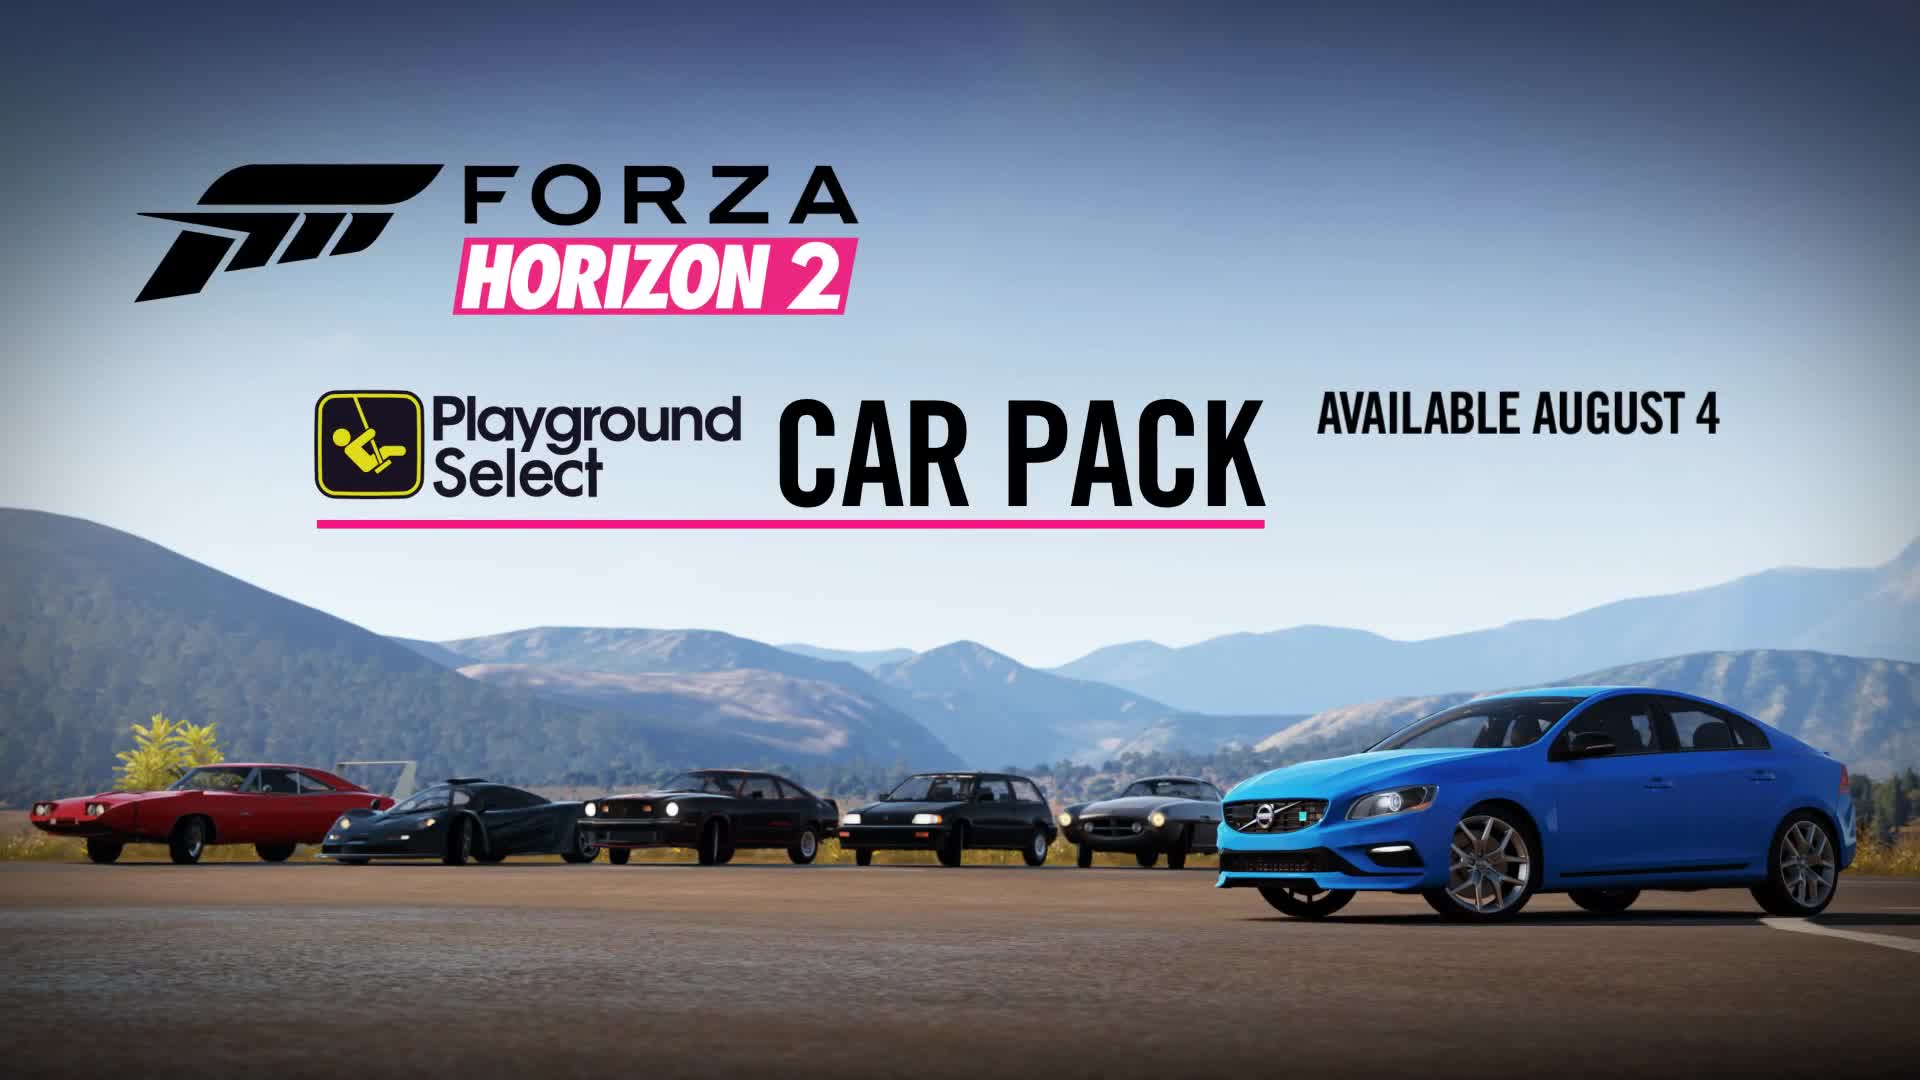 Forza Horizon 2 - free Playground car pack